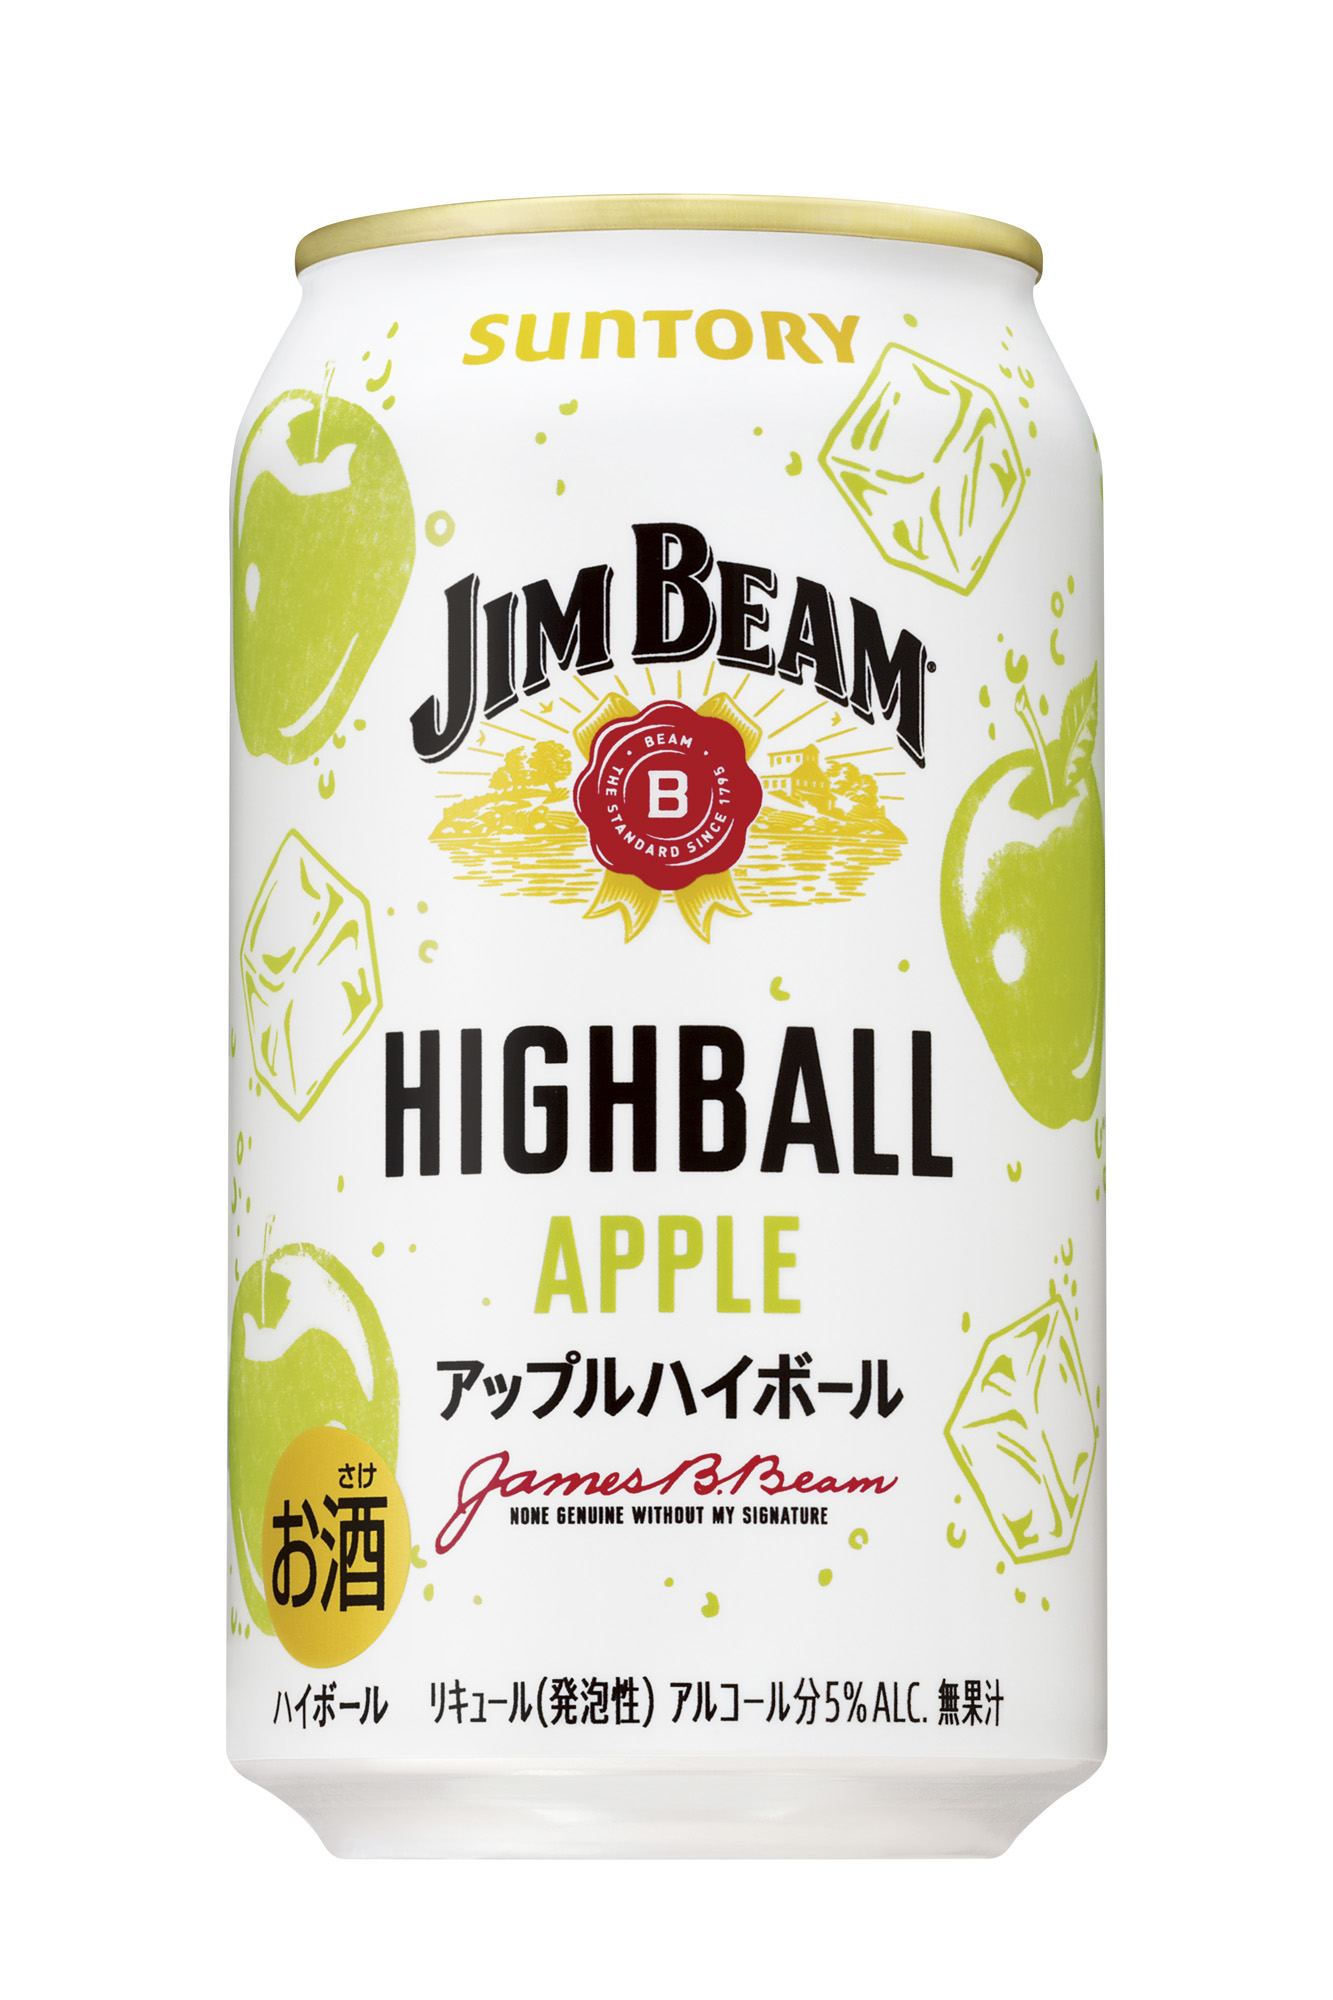 「ジムビーム ハイボール缶〈アップルハイボール〉」期間限定新発売